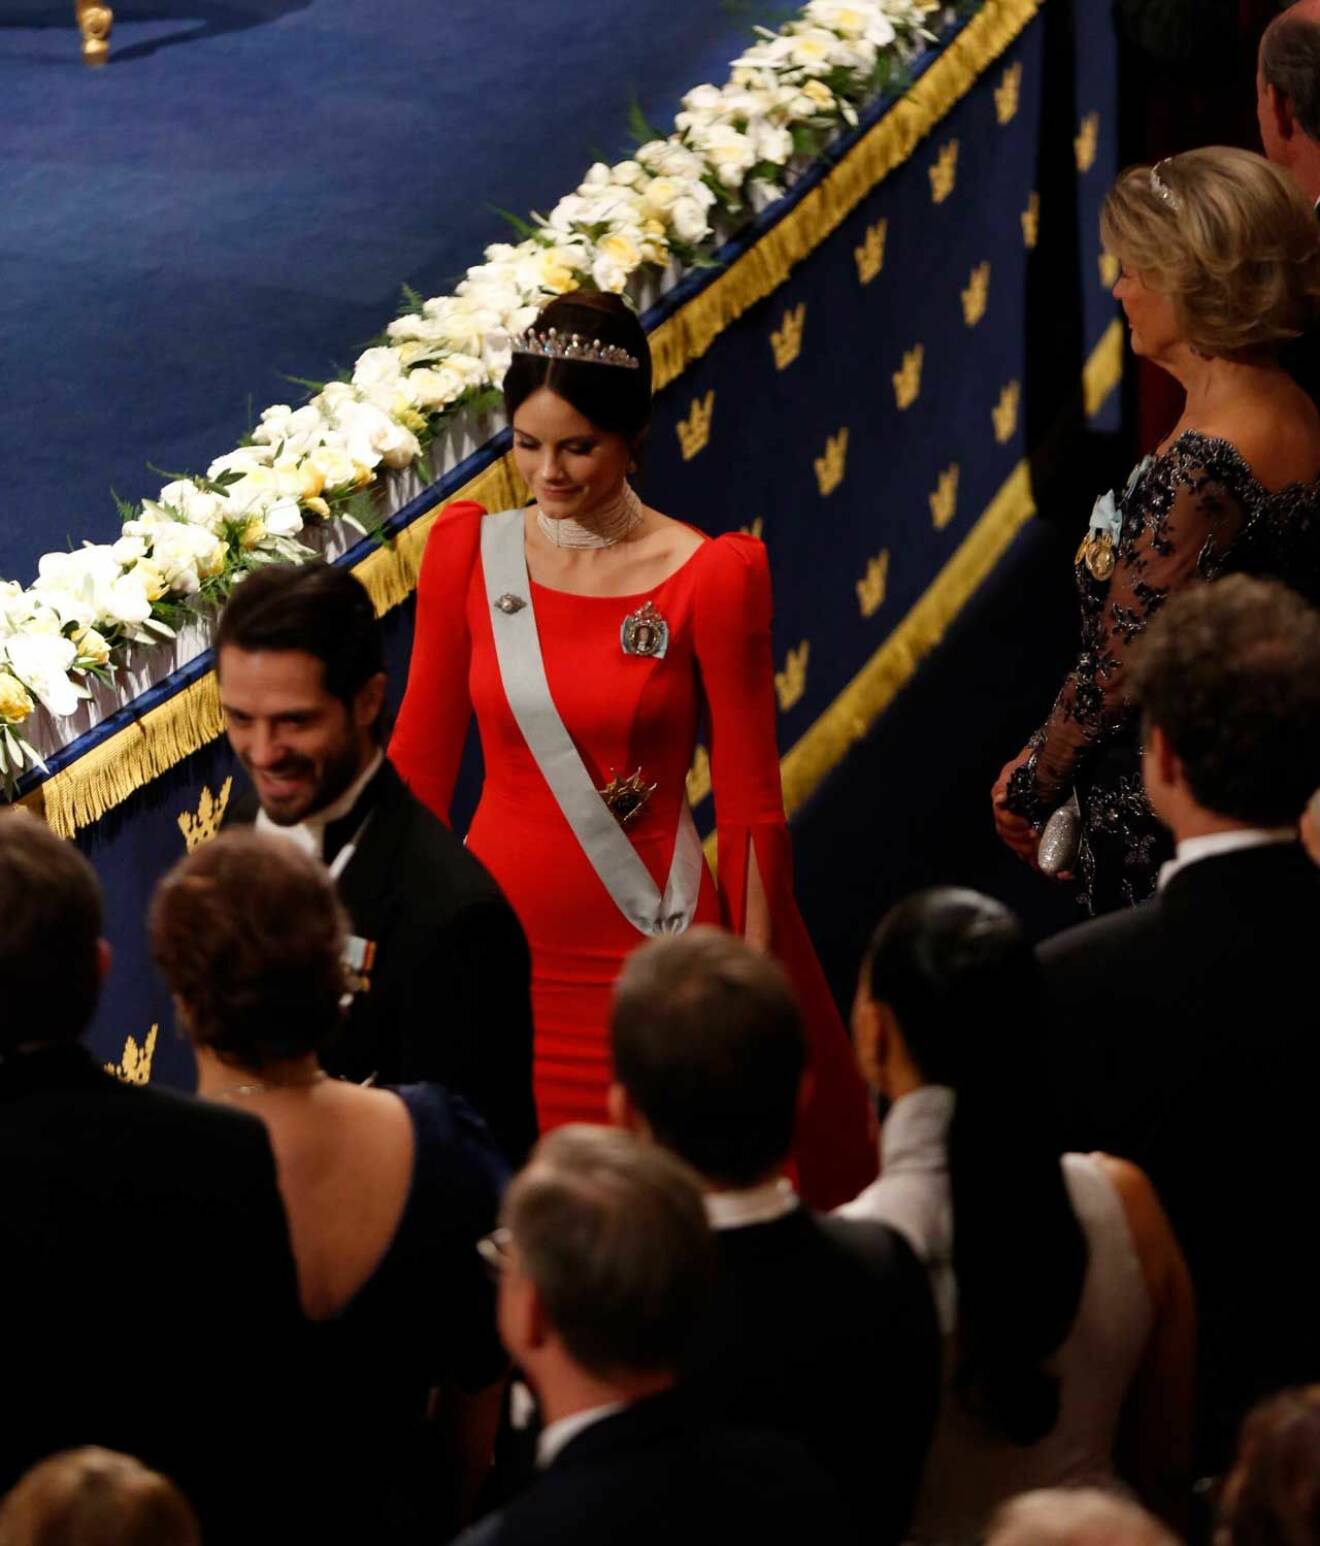 Prinsessan Sofia i röd klänning och tiara